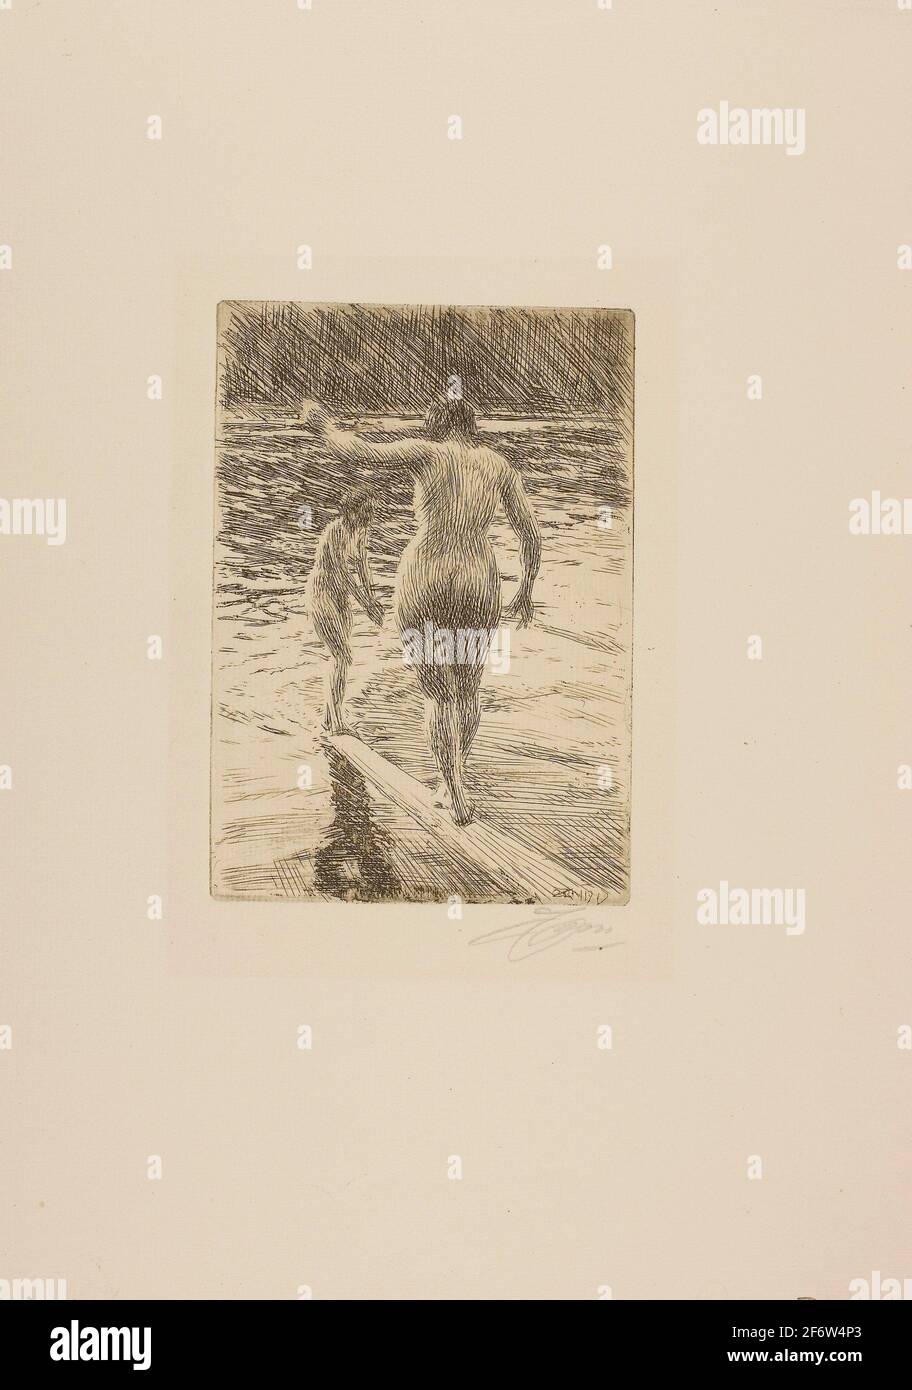 Anders Zorn. Balance-1919-Anders Zorn Suédois, 1860-1920. Gravure sur papier ivoire. Suède. Banque D'Images